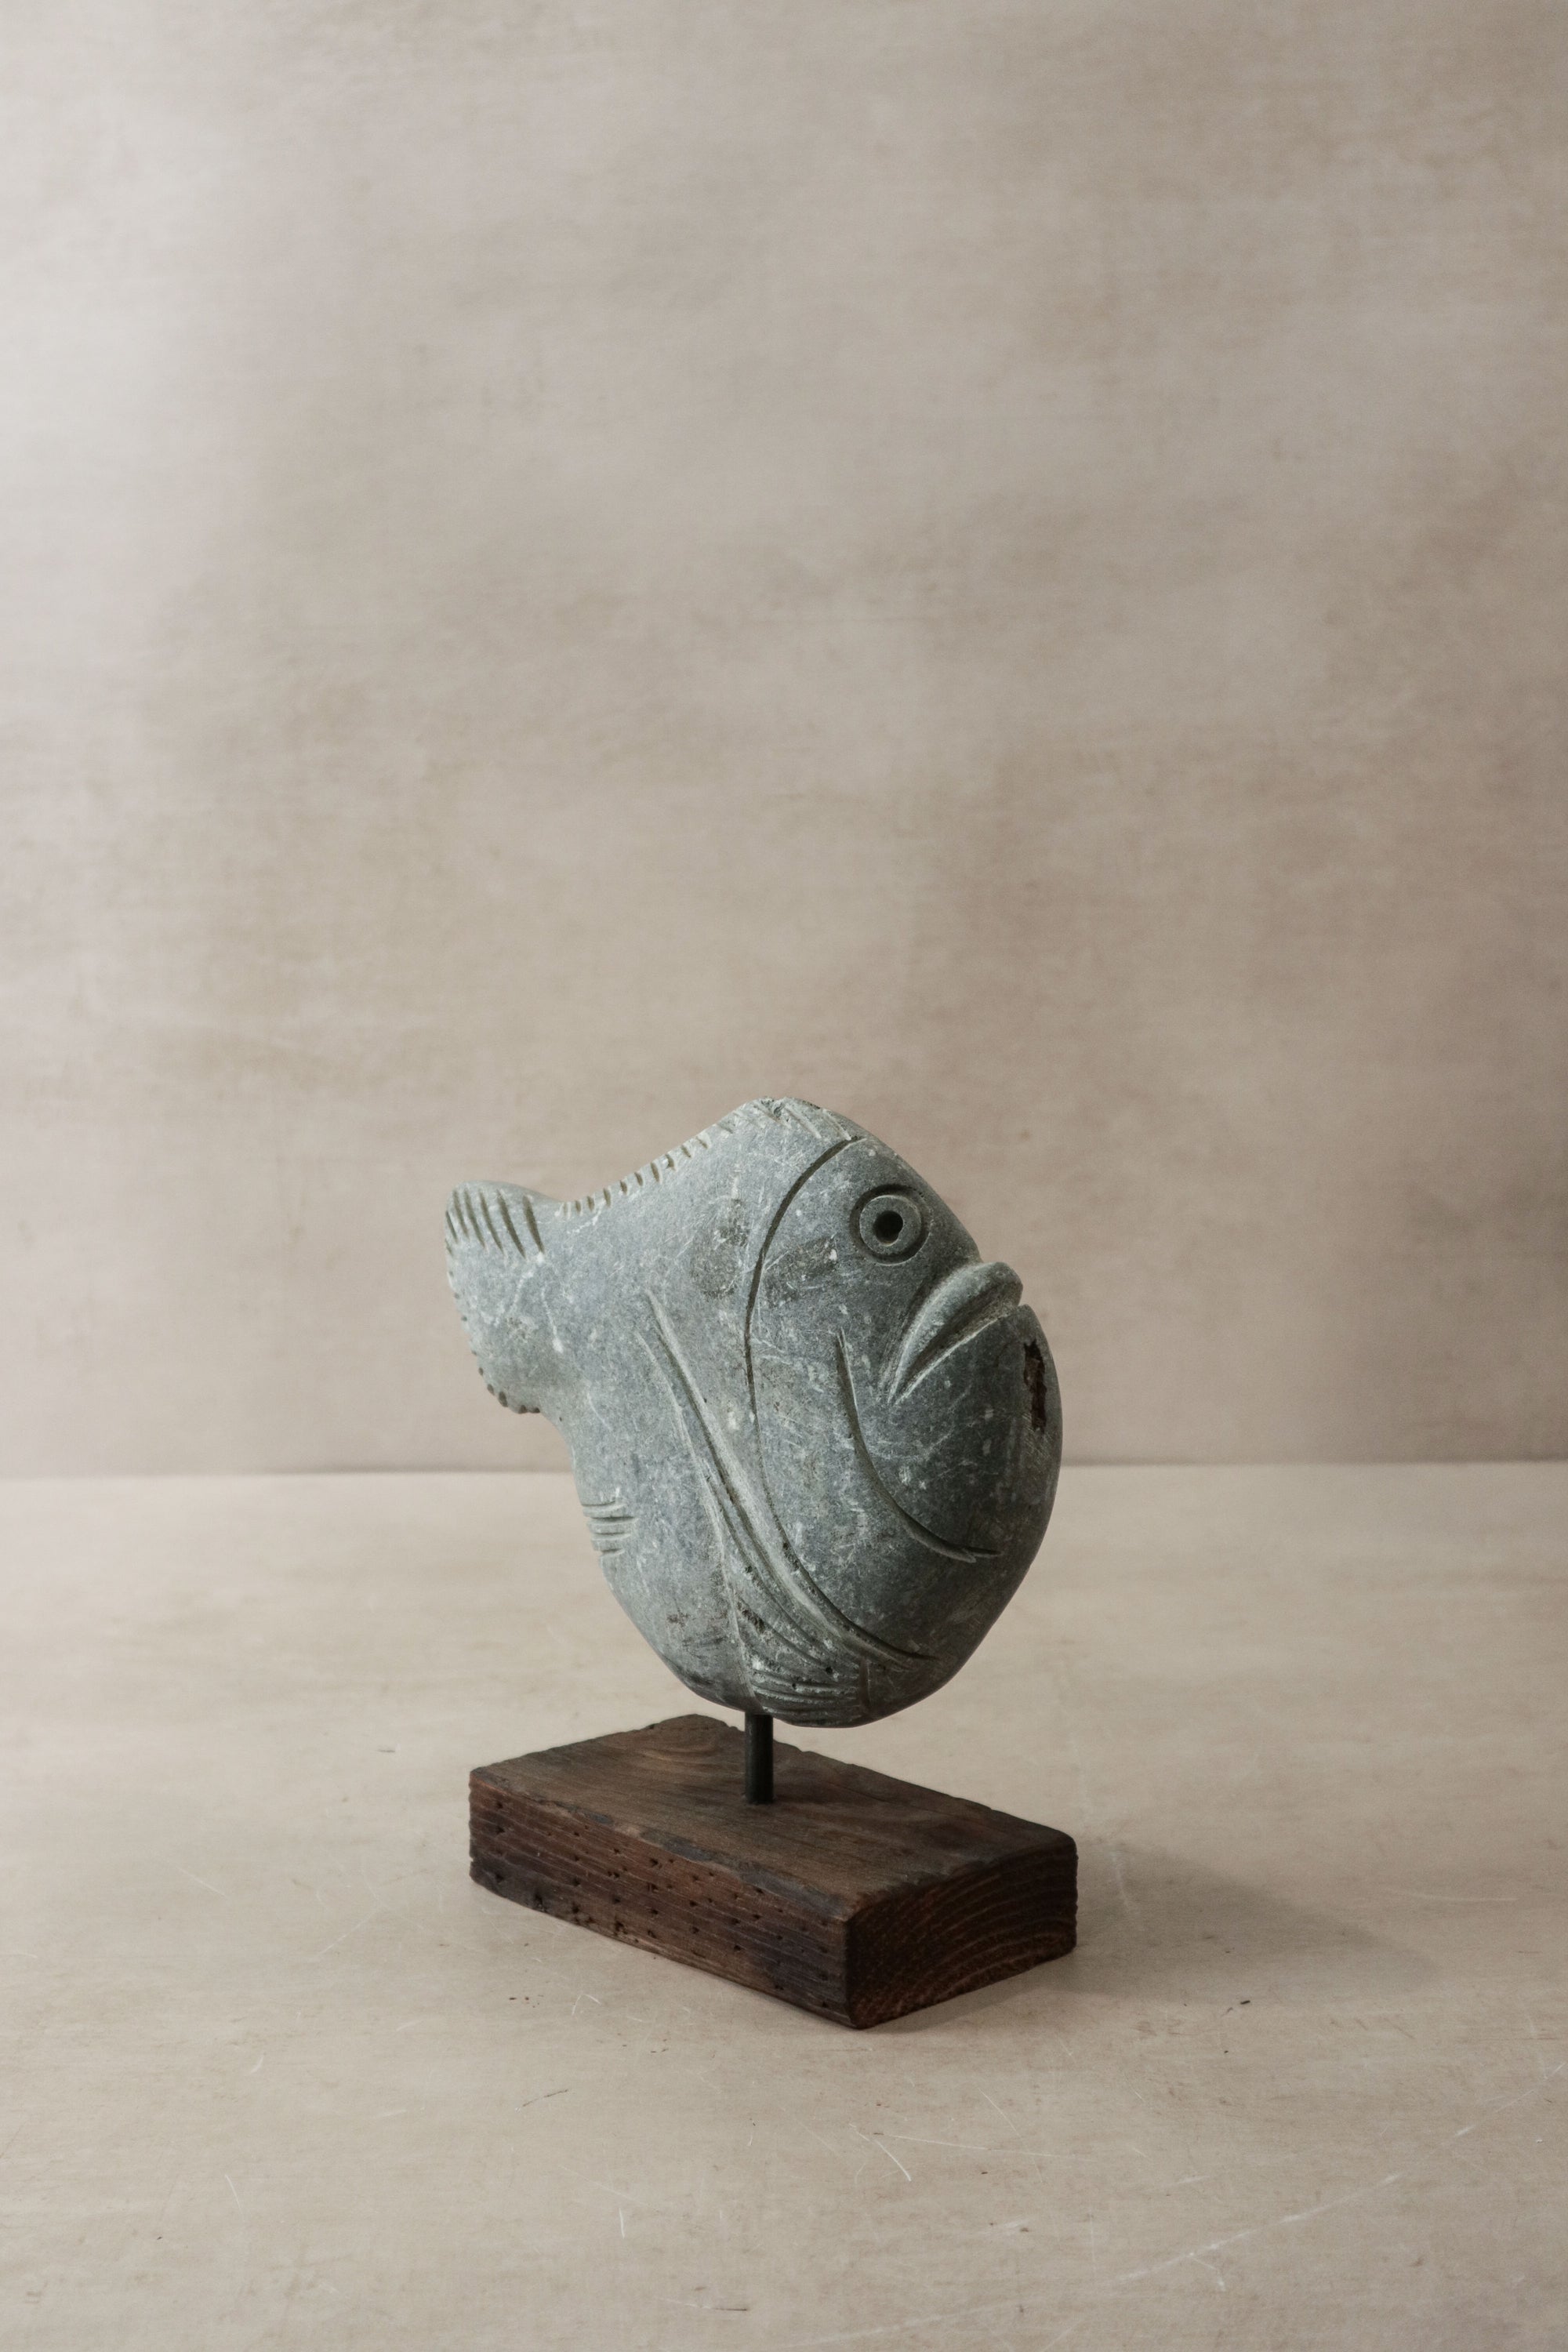 Stone Fish Sculpture - Zimbabwe - 30.5